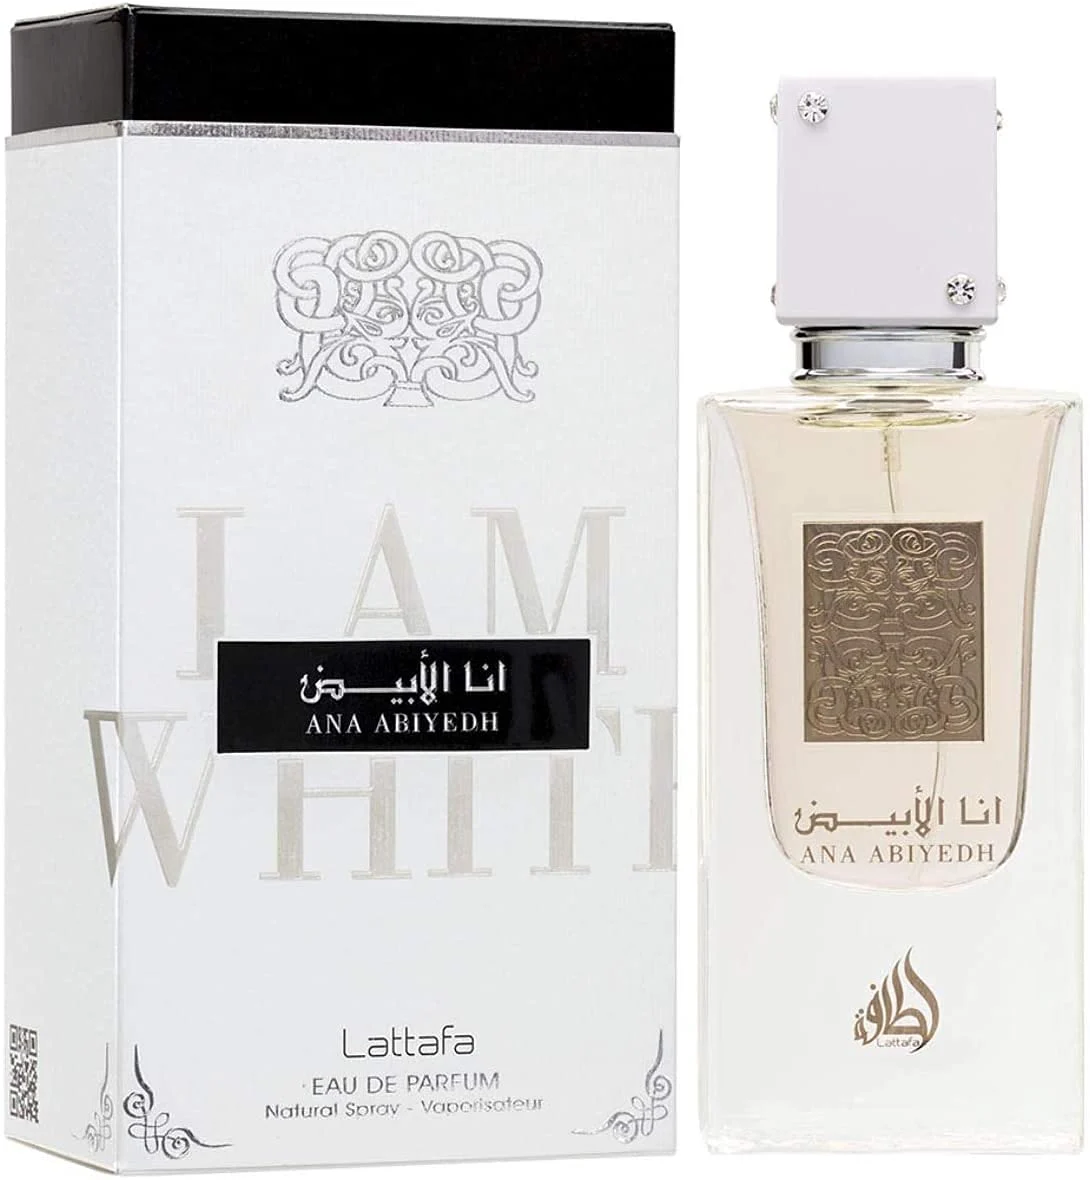 Lattafa Perfumes Ana Abiyedh Eau De Parfum 60 ml By Lattafa Perfume Spray